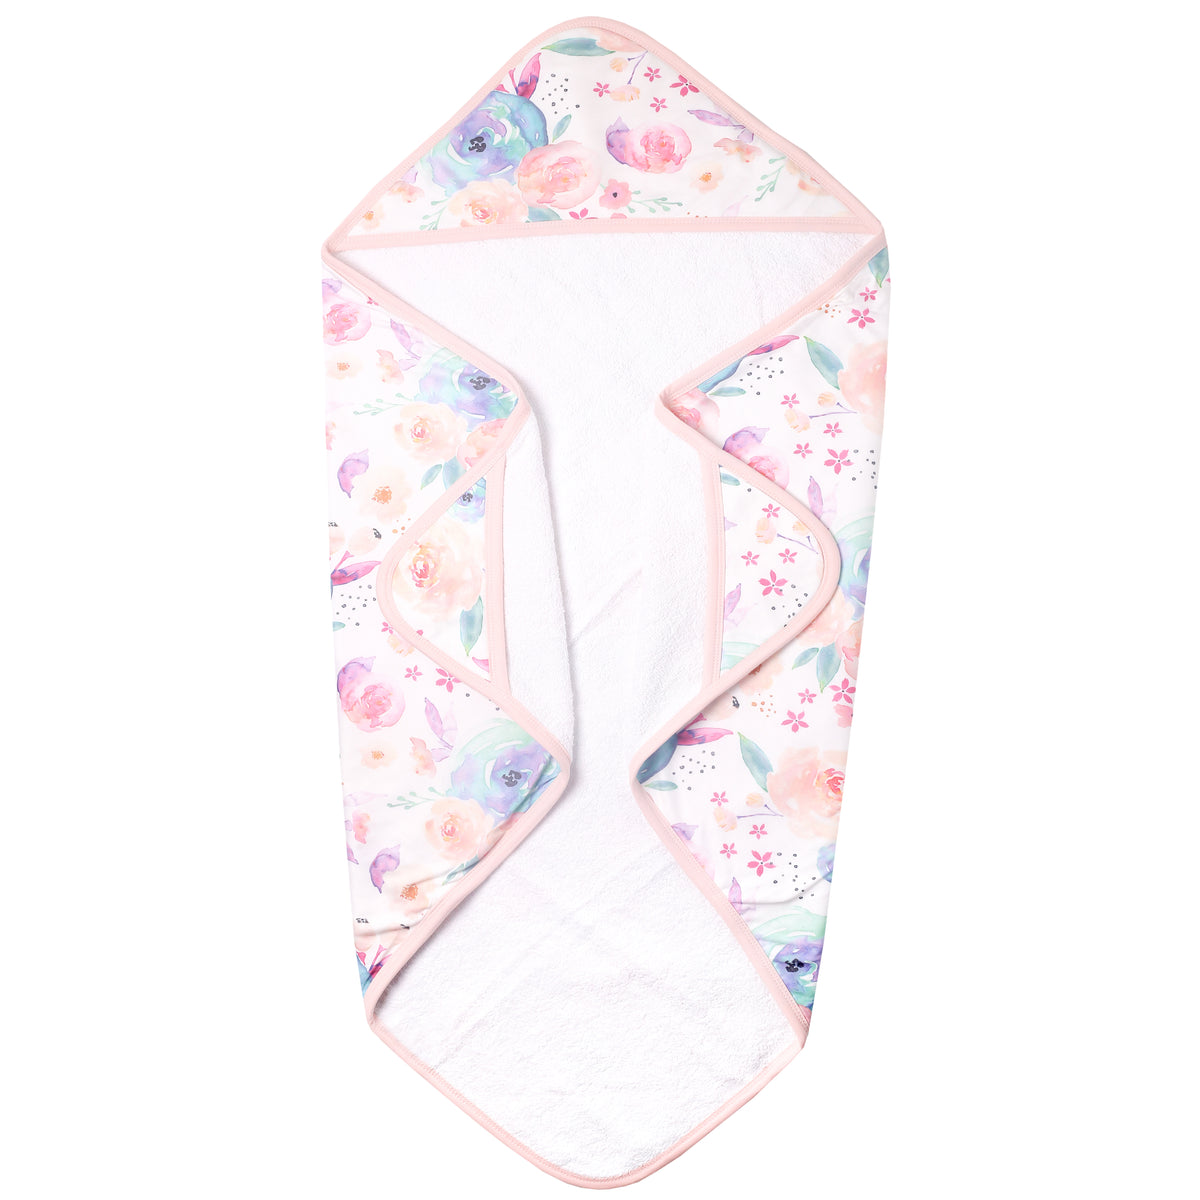 Premium Knit Hooded Towel - Bloom